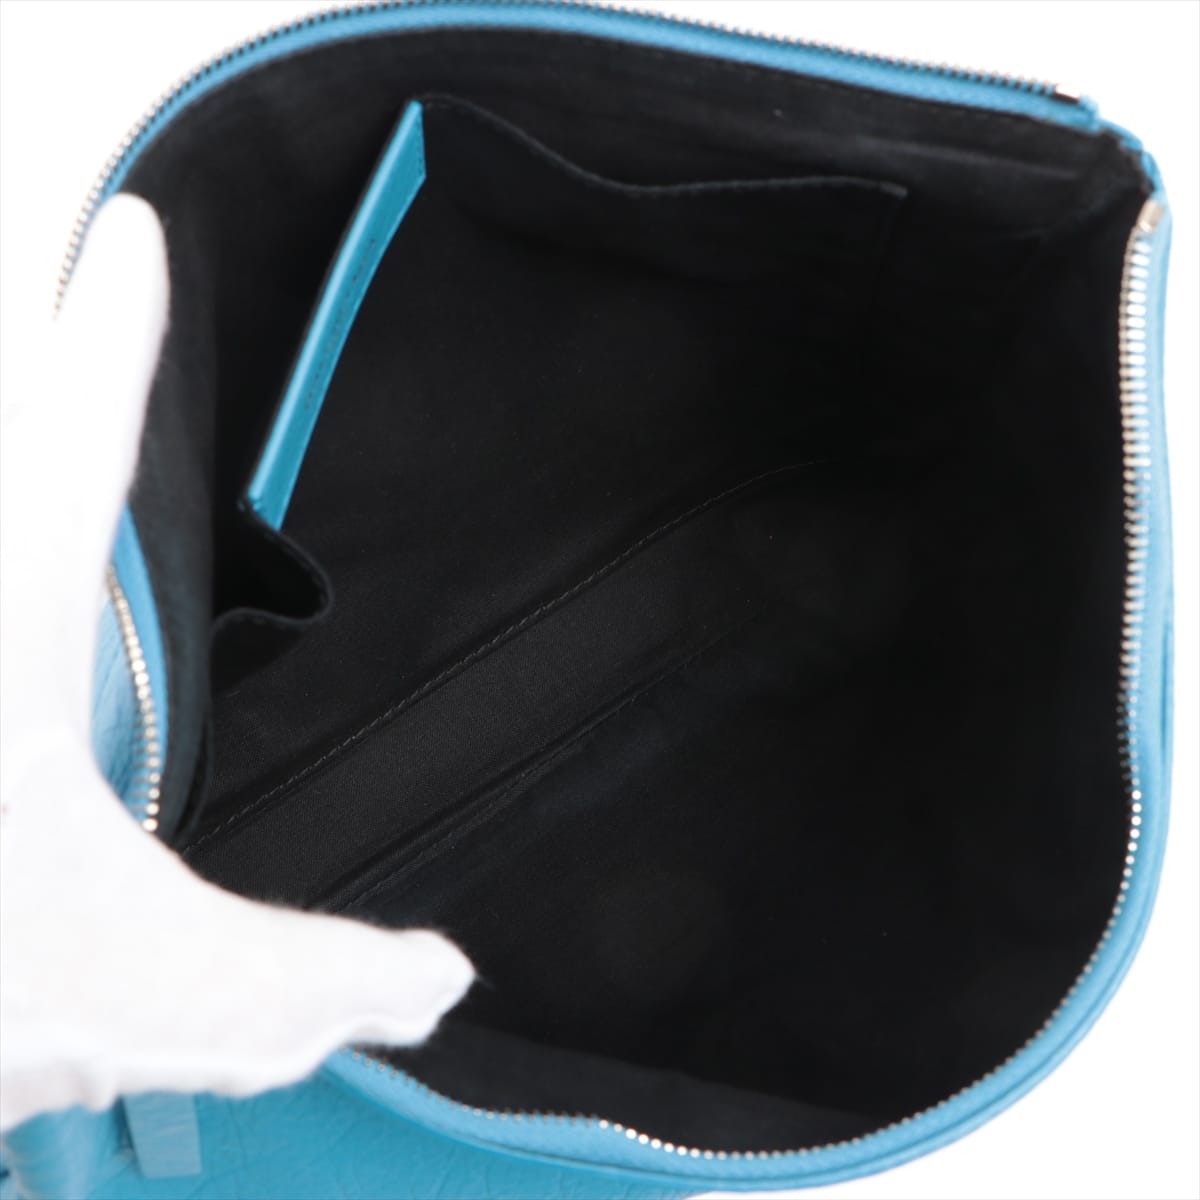 Balenciaga Leather Clutch bag Blue 506794